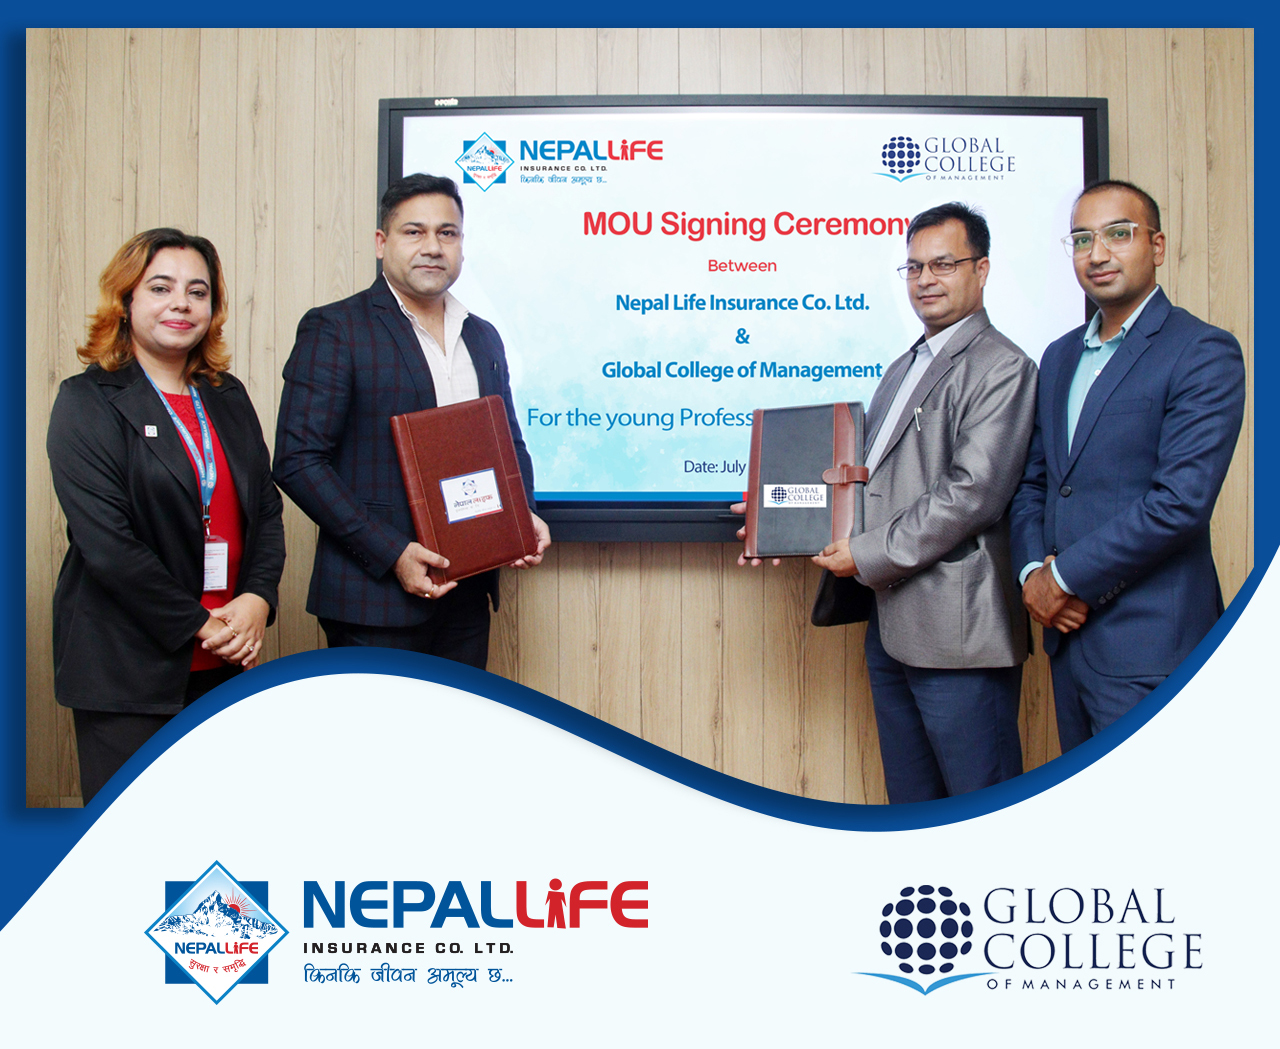 नेपाल लाइफ र ग्लोबल कलेजबीच एमओयु सम्पन्न